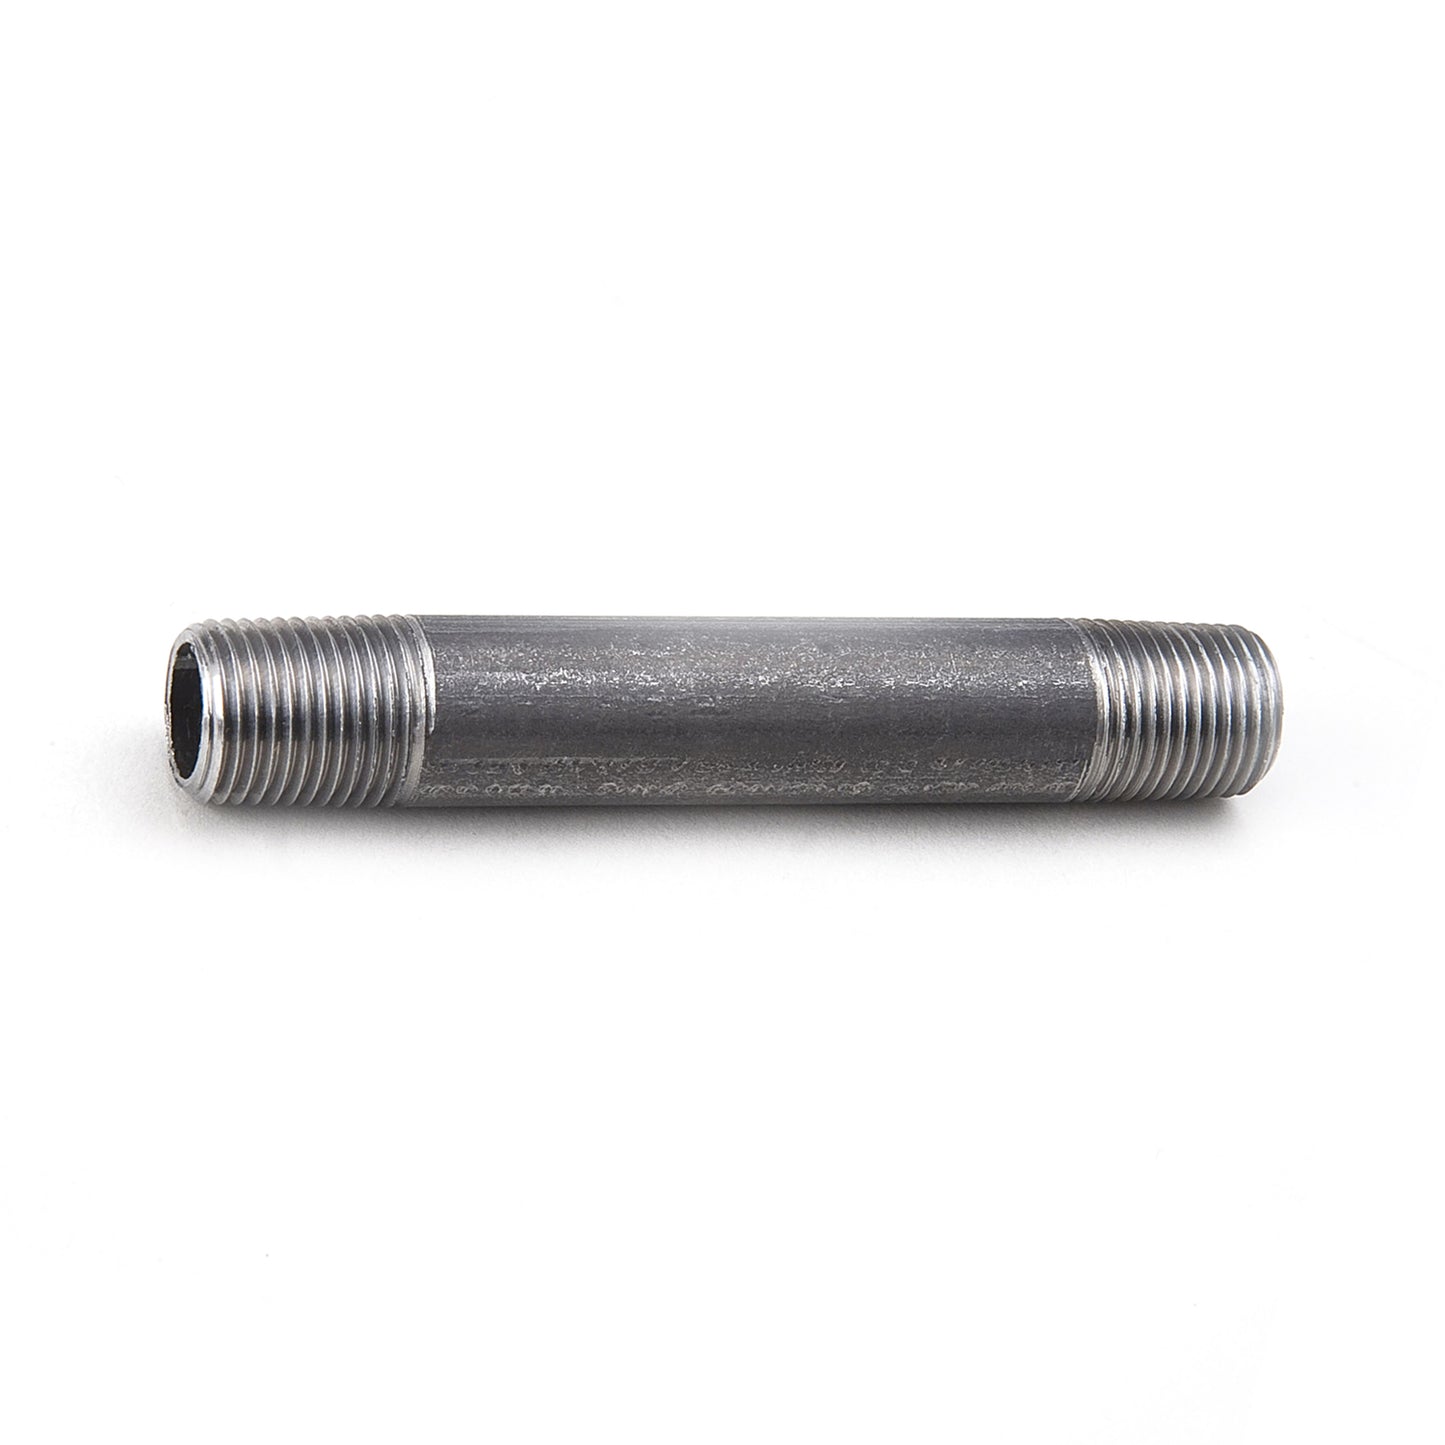 NXBS08512 - Schedule 80 Black Seamless Steel Pipe Nipple - 2" X 5-1/2"